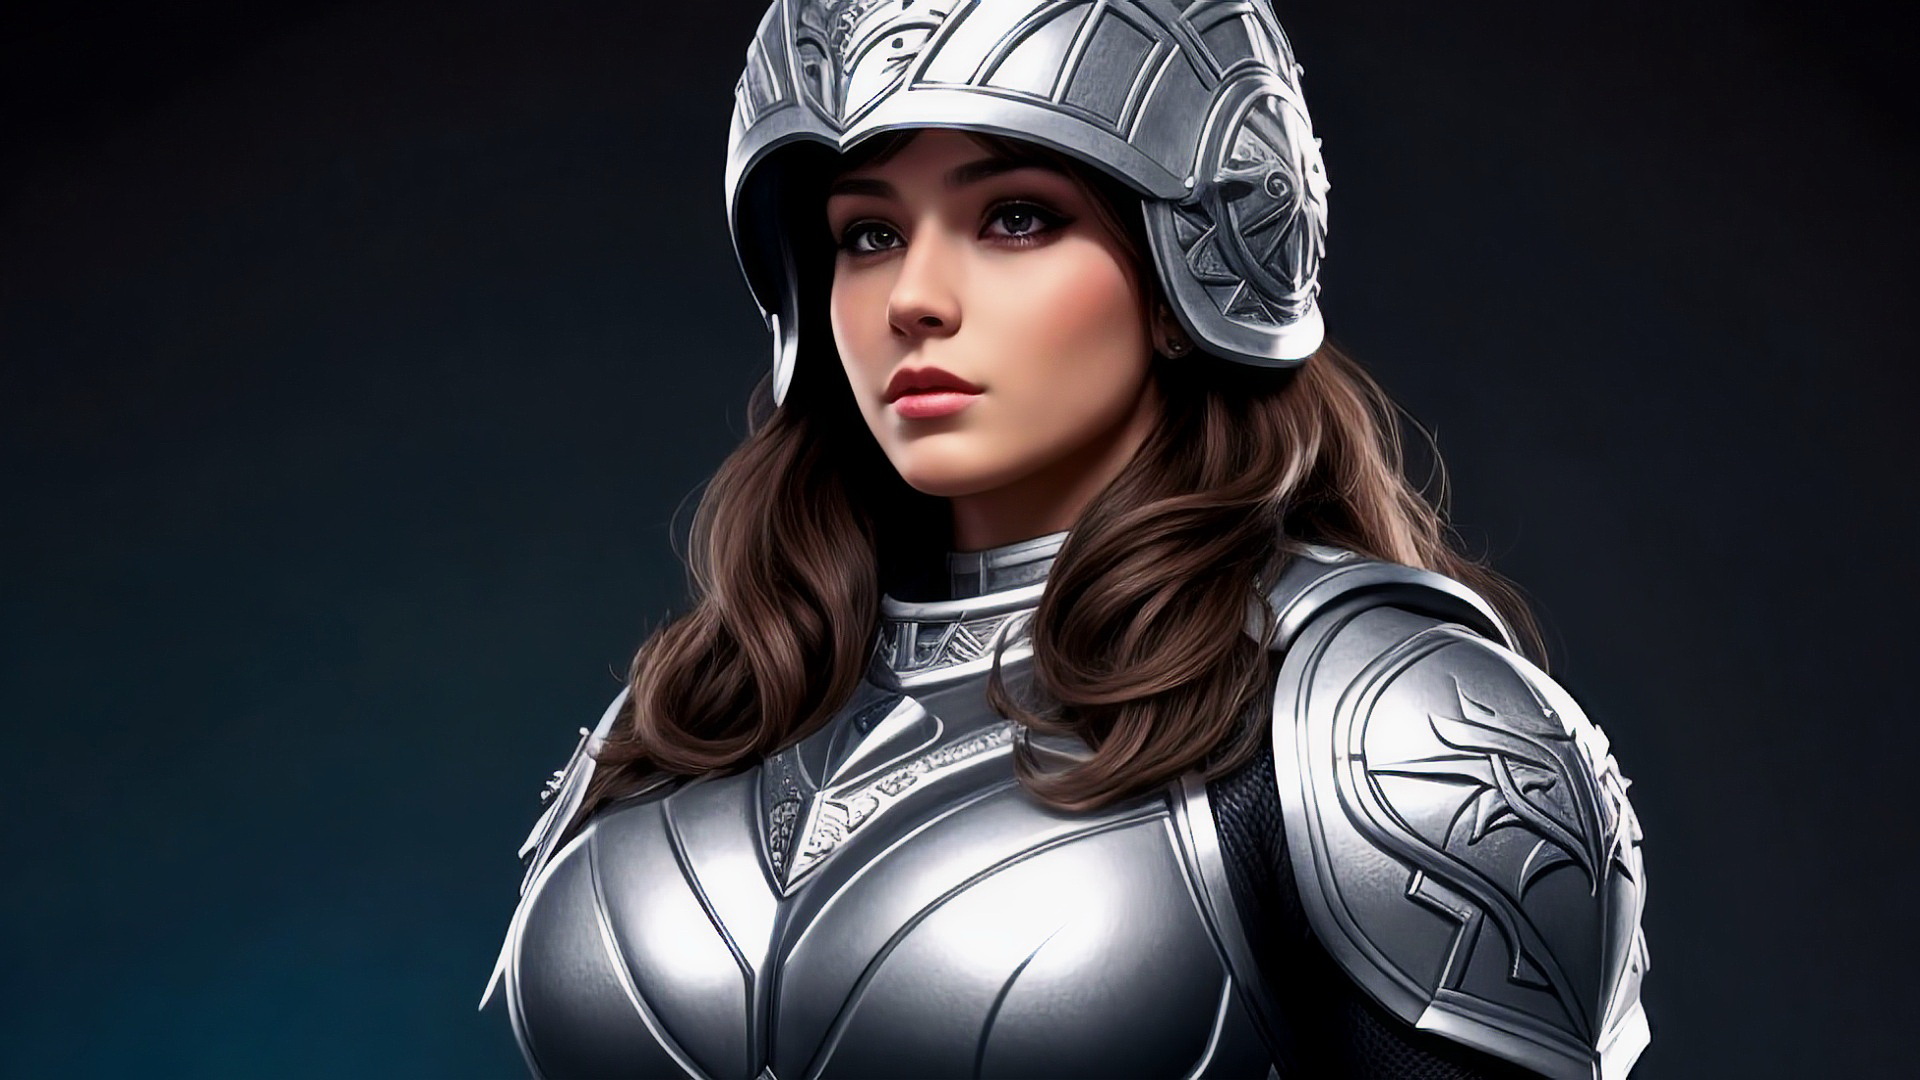 Бесплатное фото Девушка рыцарь в шлеме и доспехах на темном фоне